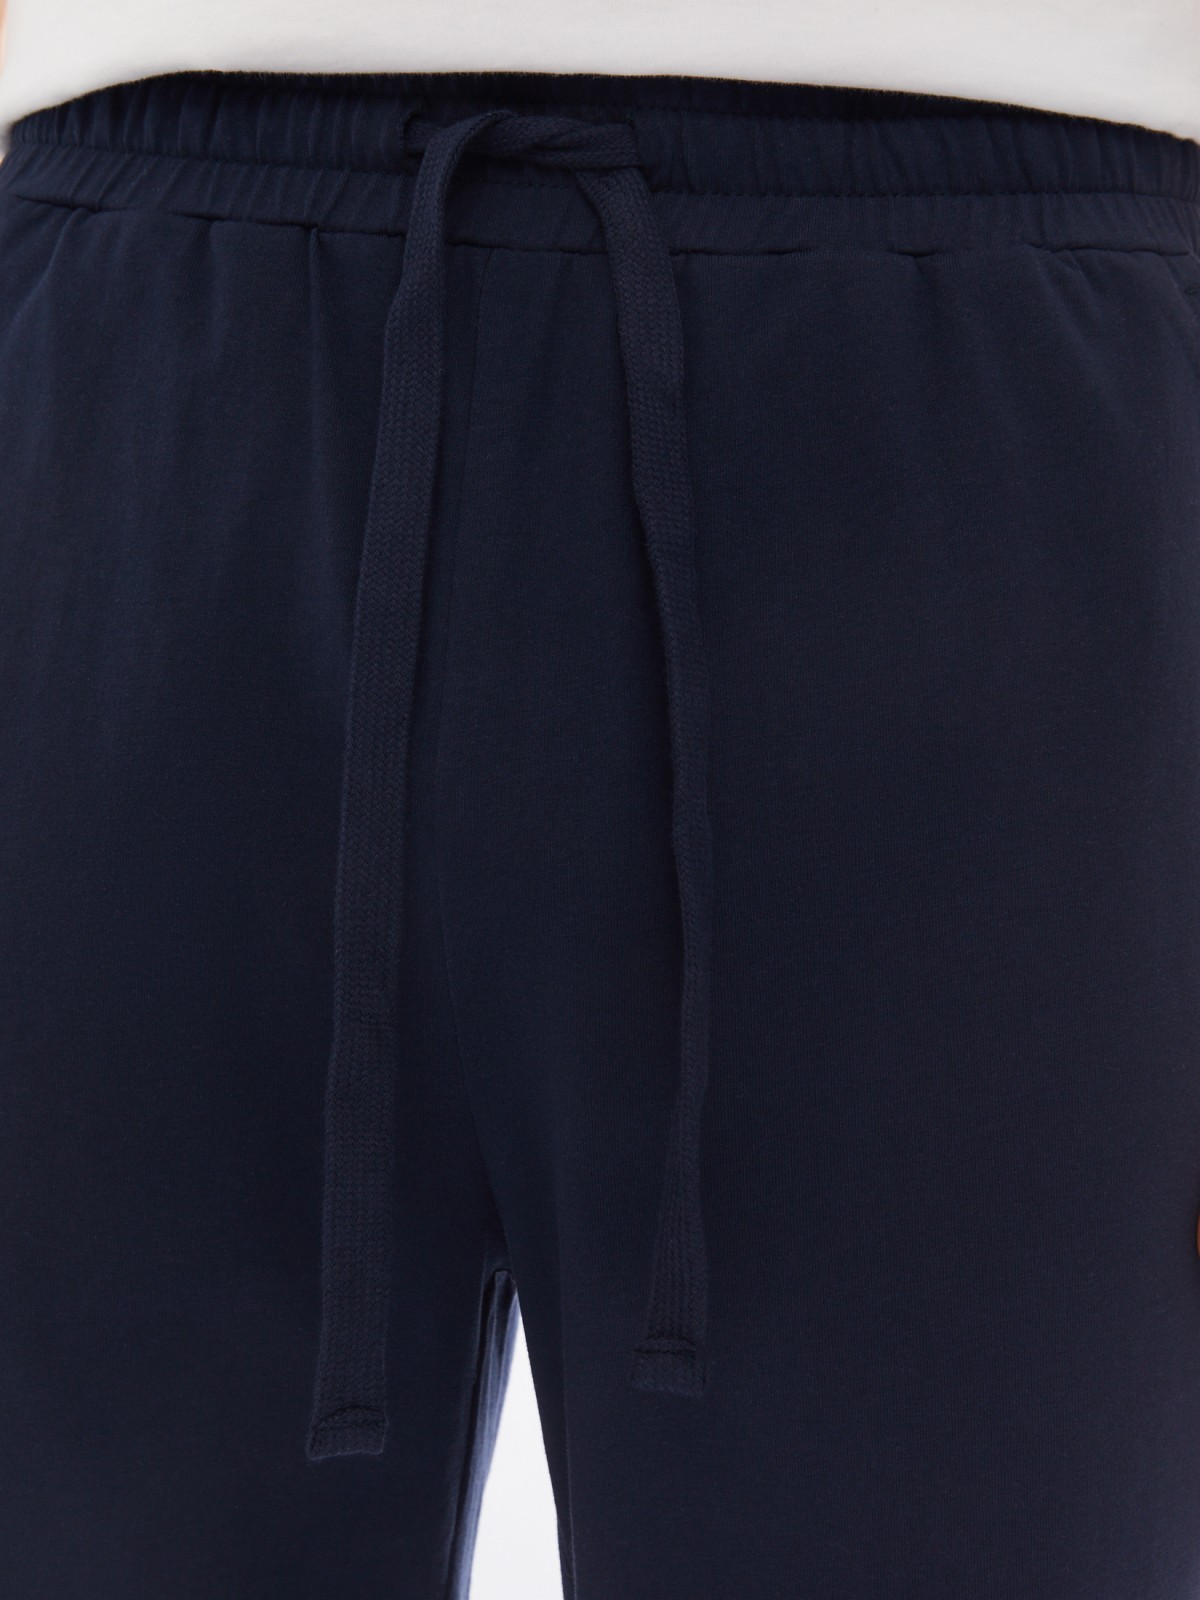 Трикотажные брюки из хлопка в спортивном стиле zolla 014137675012, цвет синий, размер S - фото 4